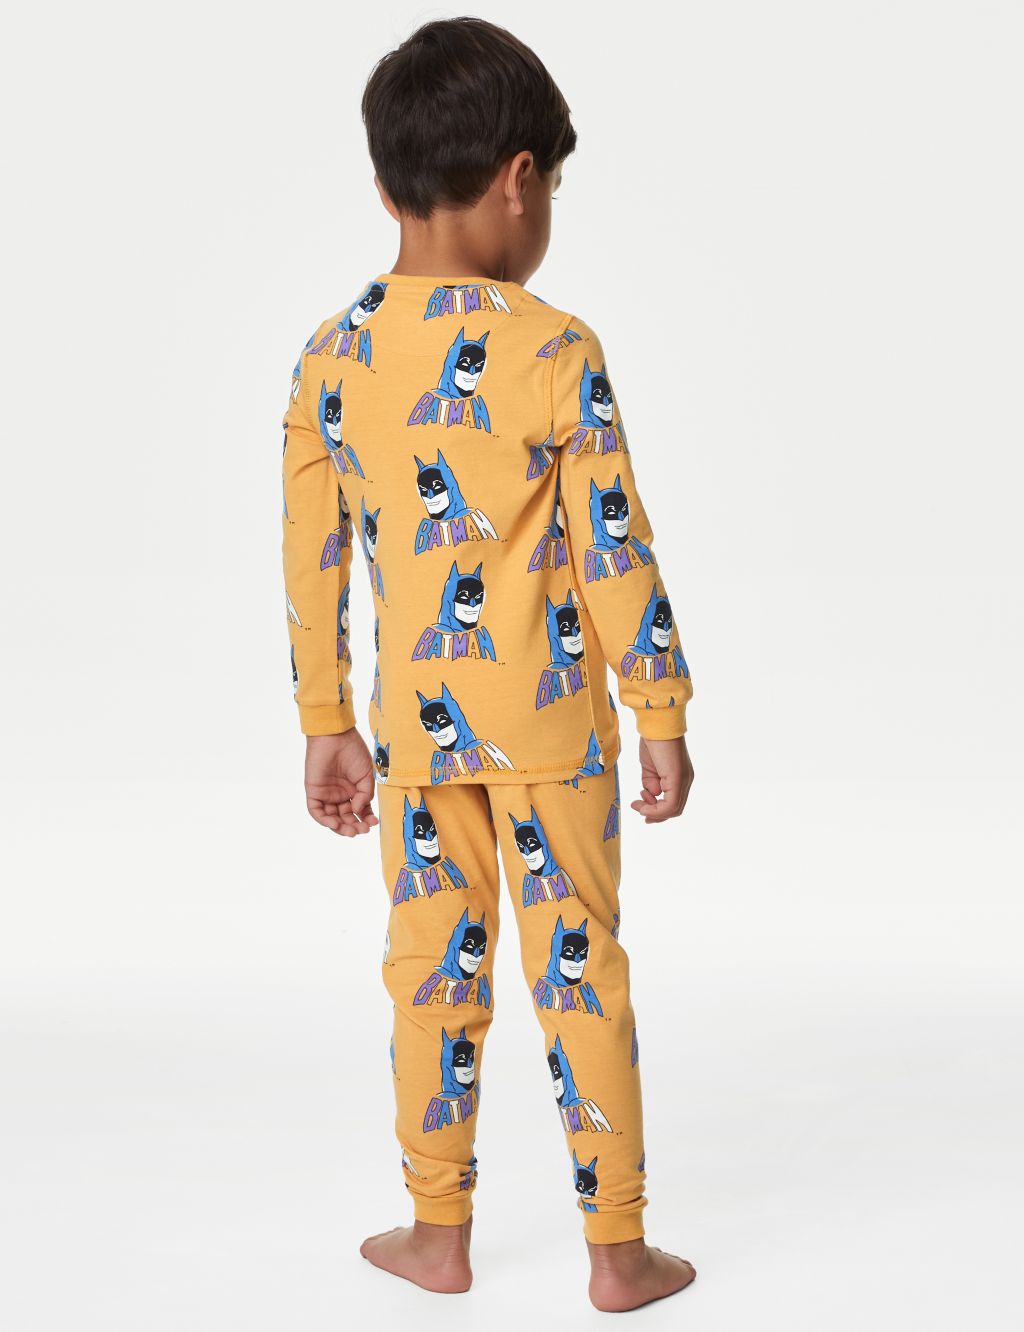 Batman™ Pyjamas (3-12 Yrs) image 2